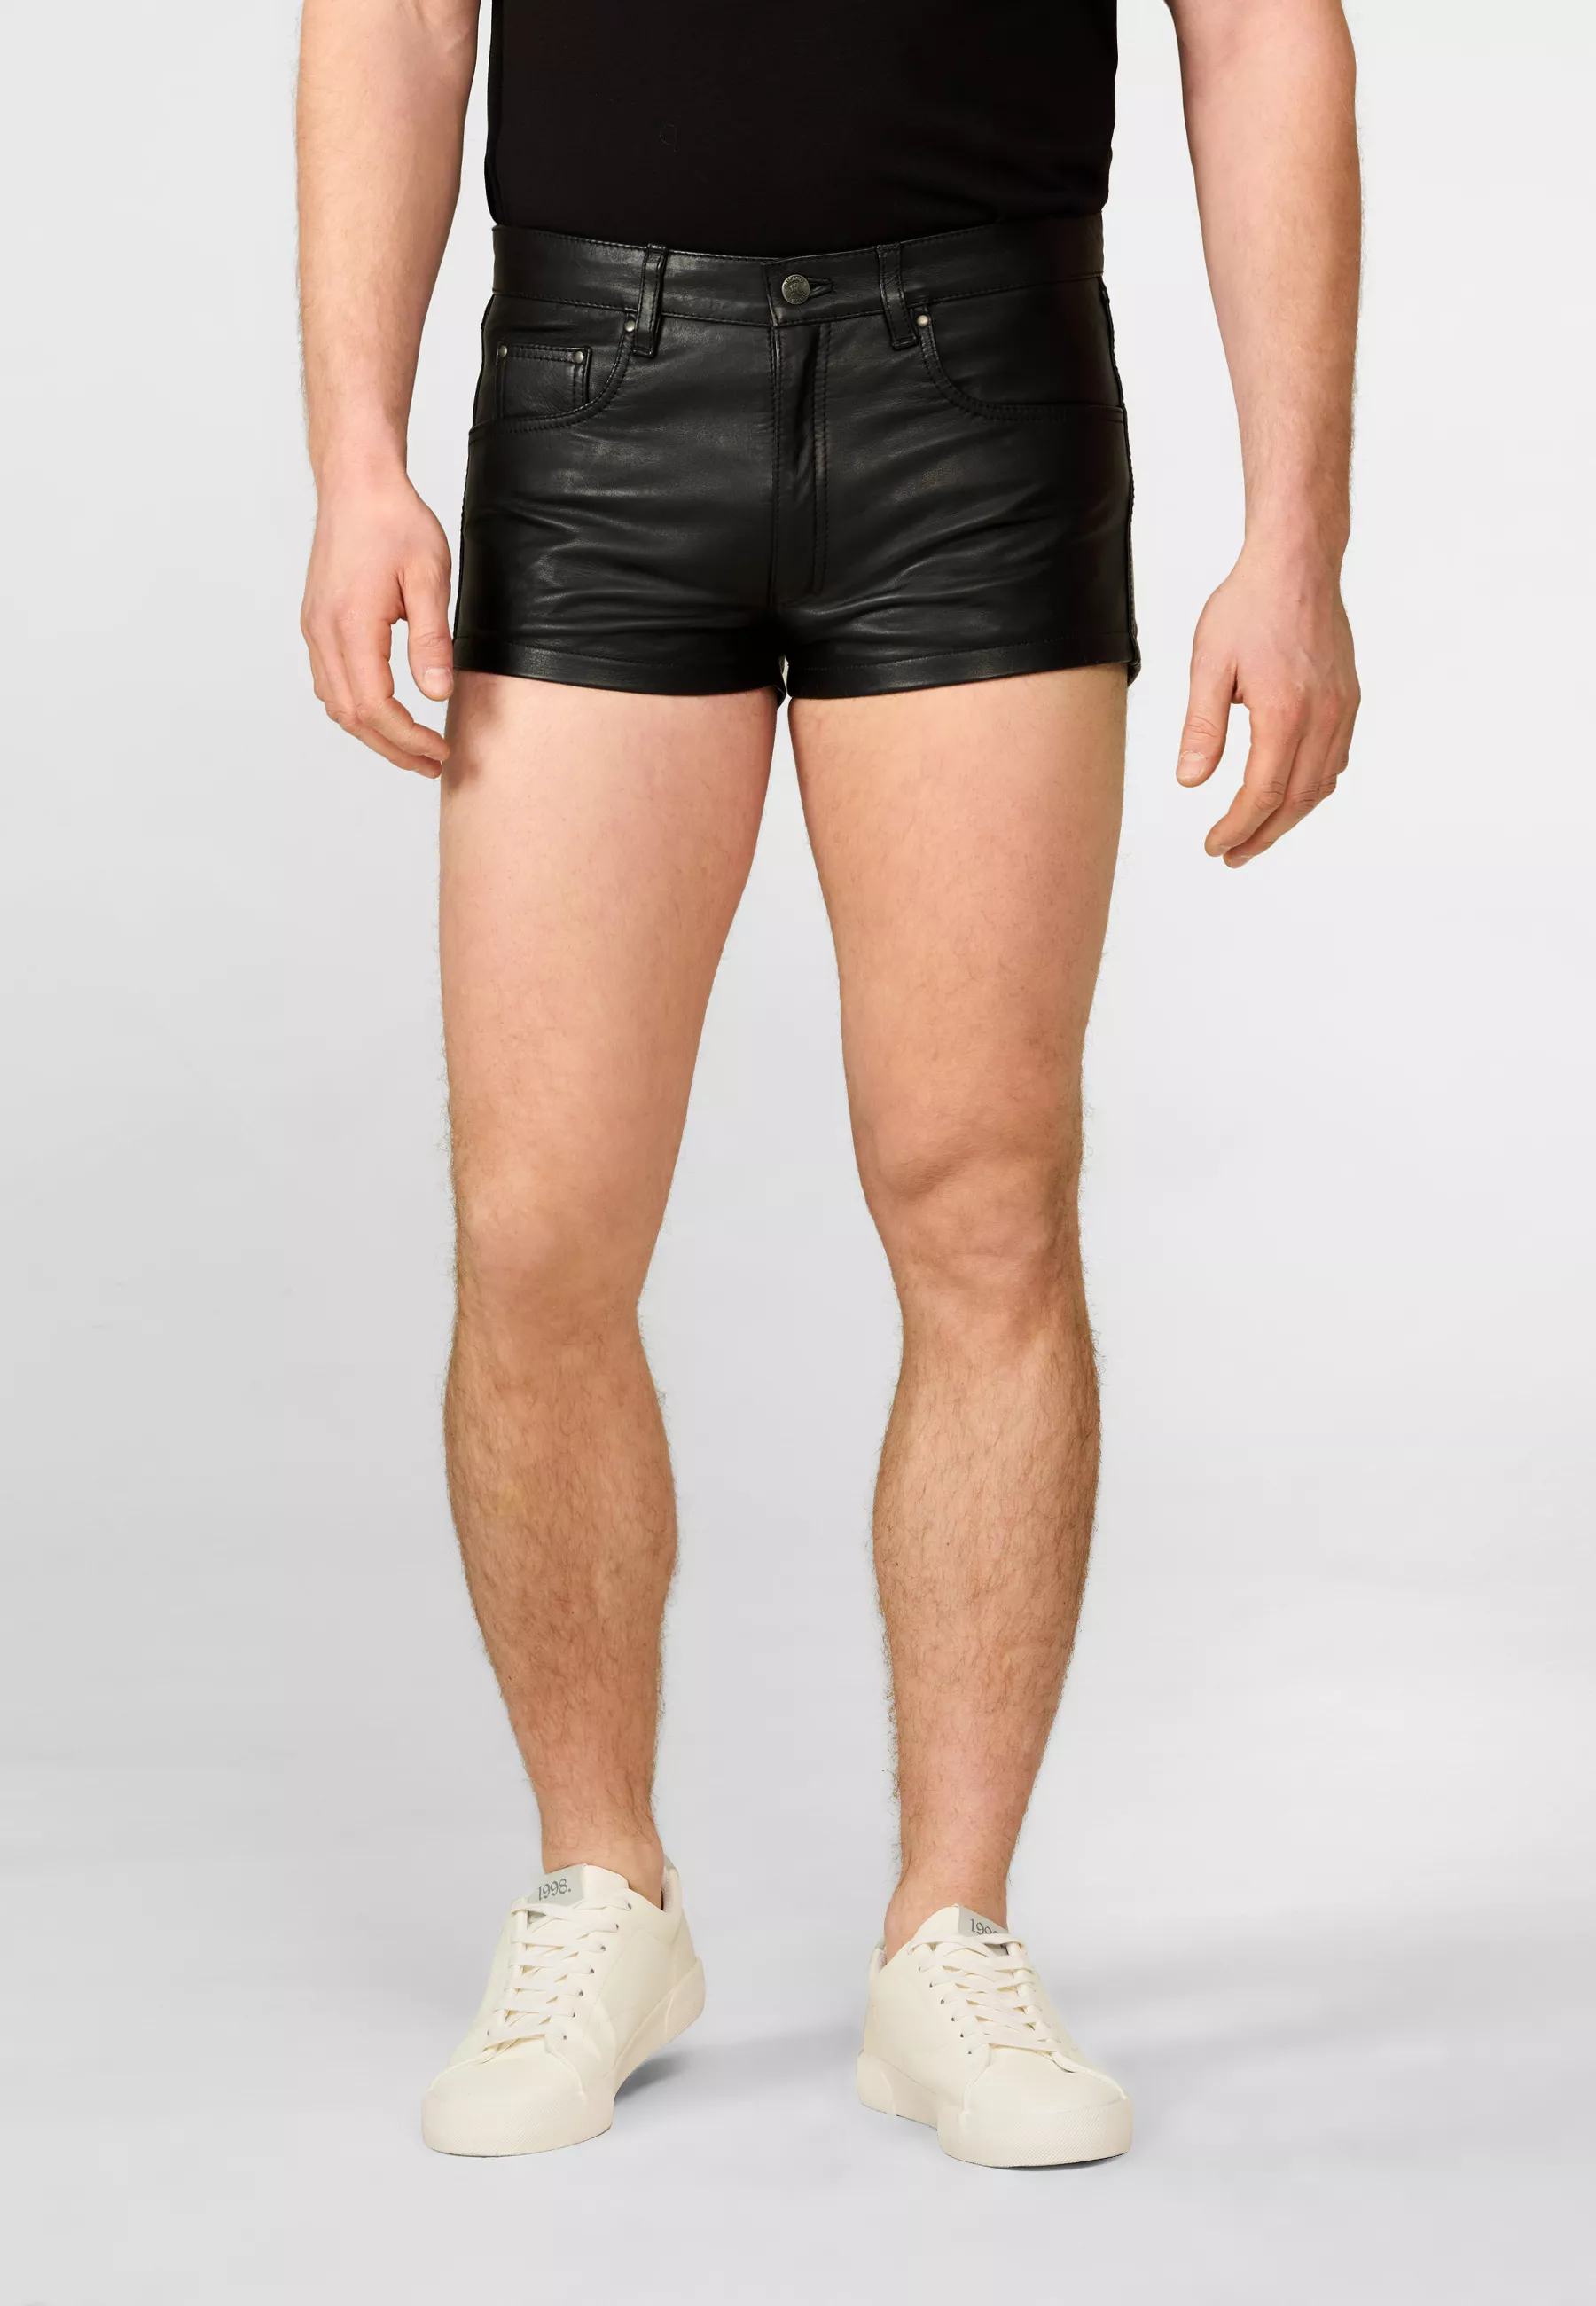 Herren Lederhose Shorts in Schwarz von Ricano, Frontansicht am Model